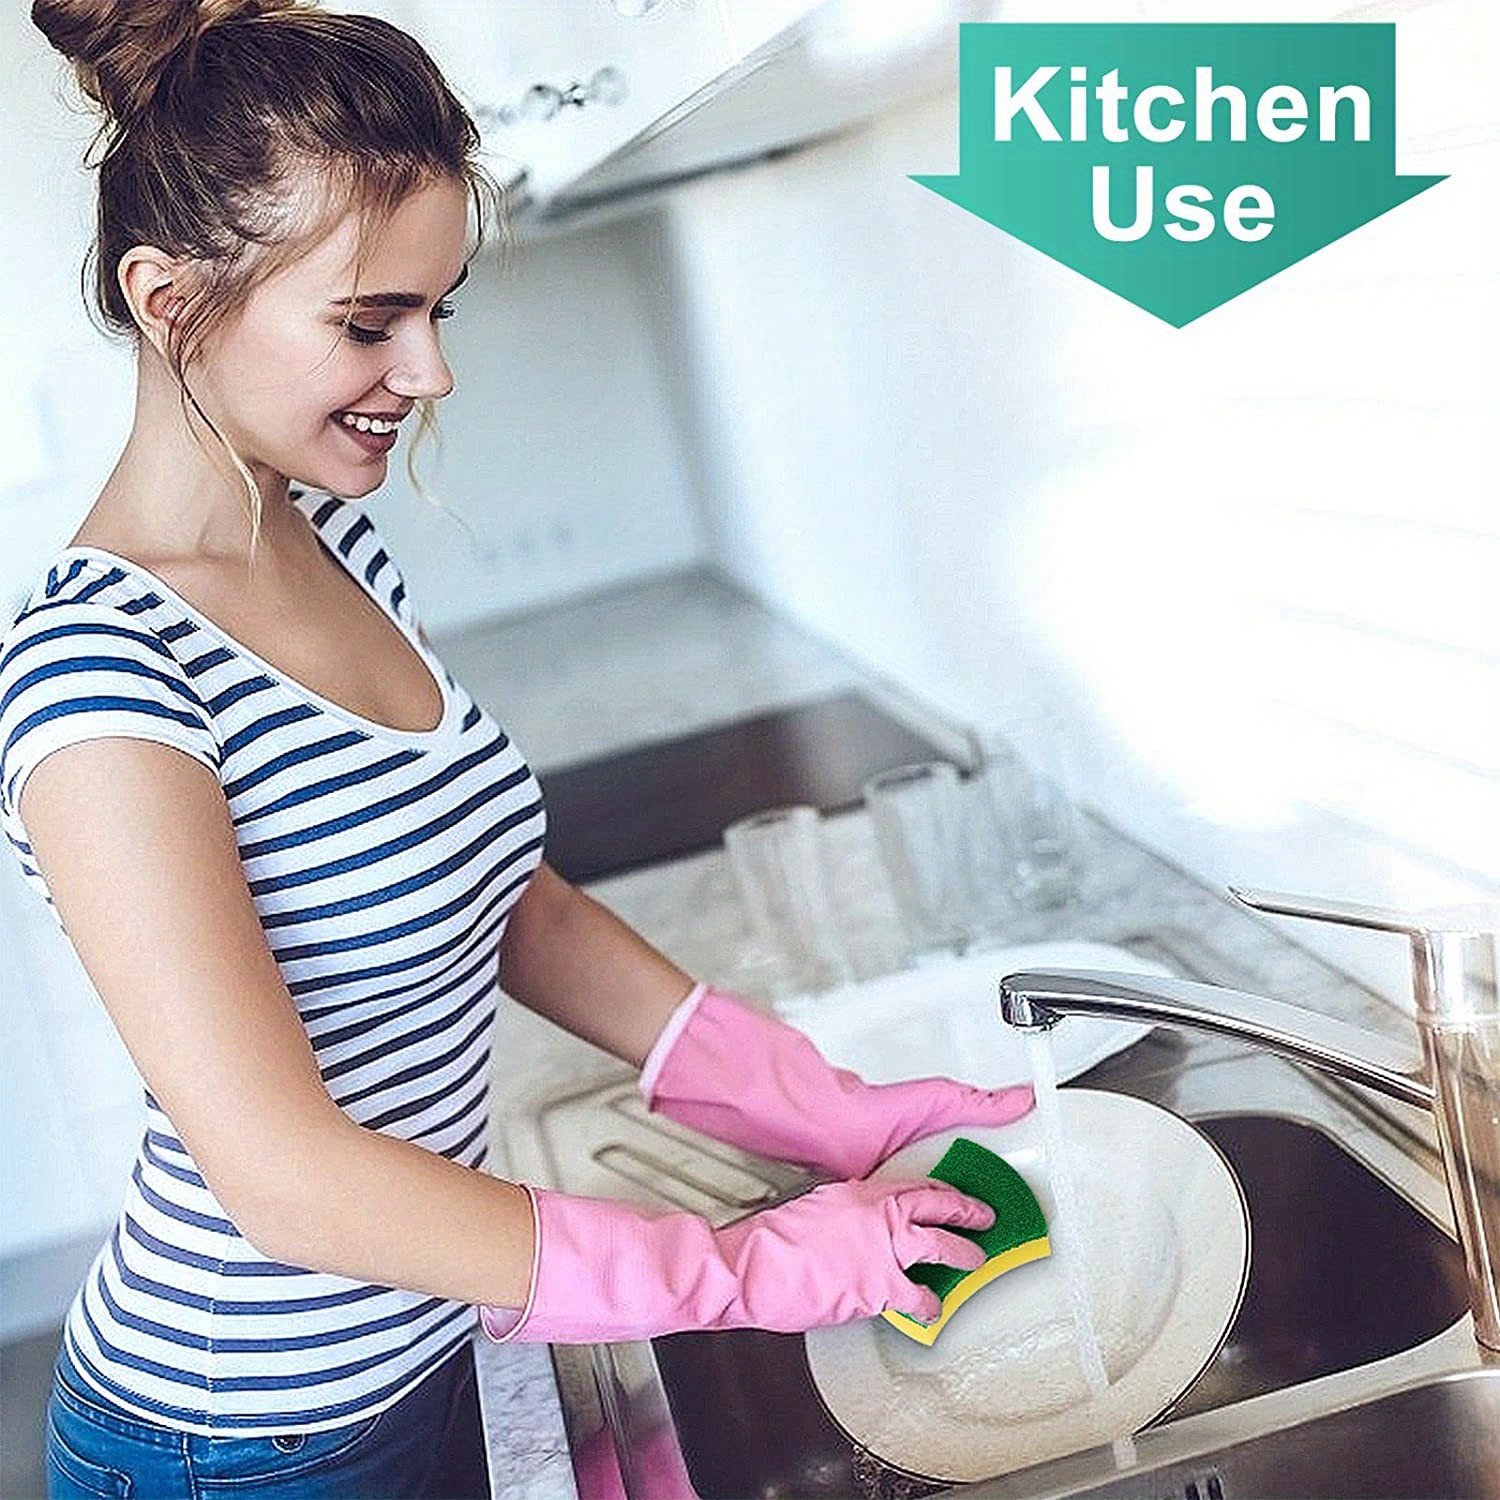 Comprar soporte estropajo clean kit cocina Tienda organizar y limpiar